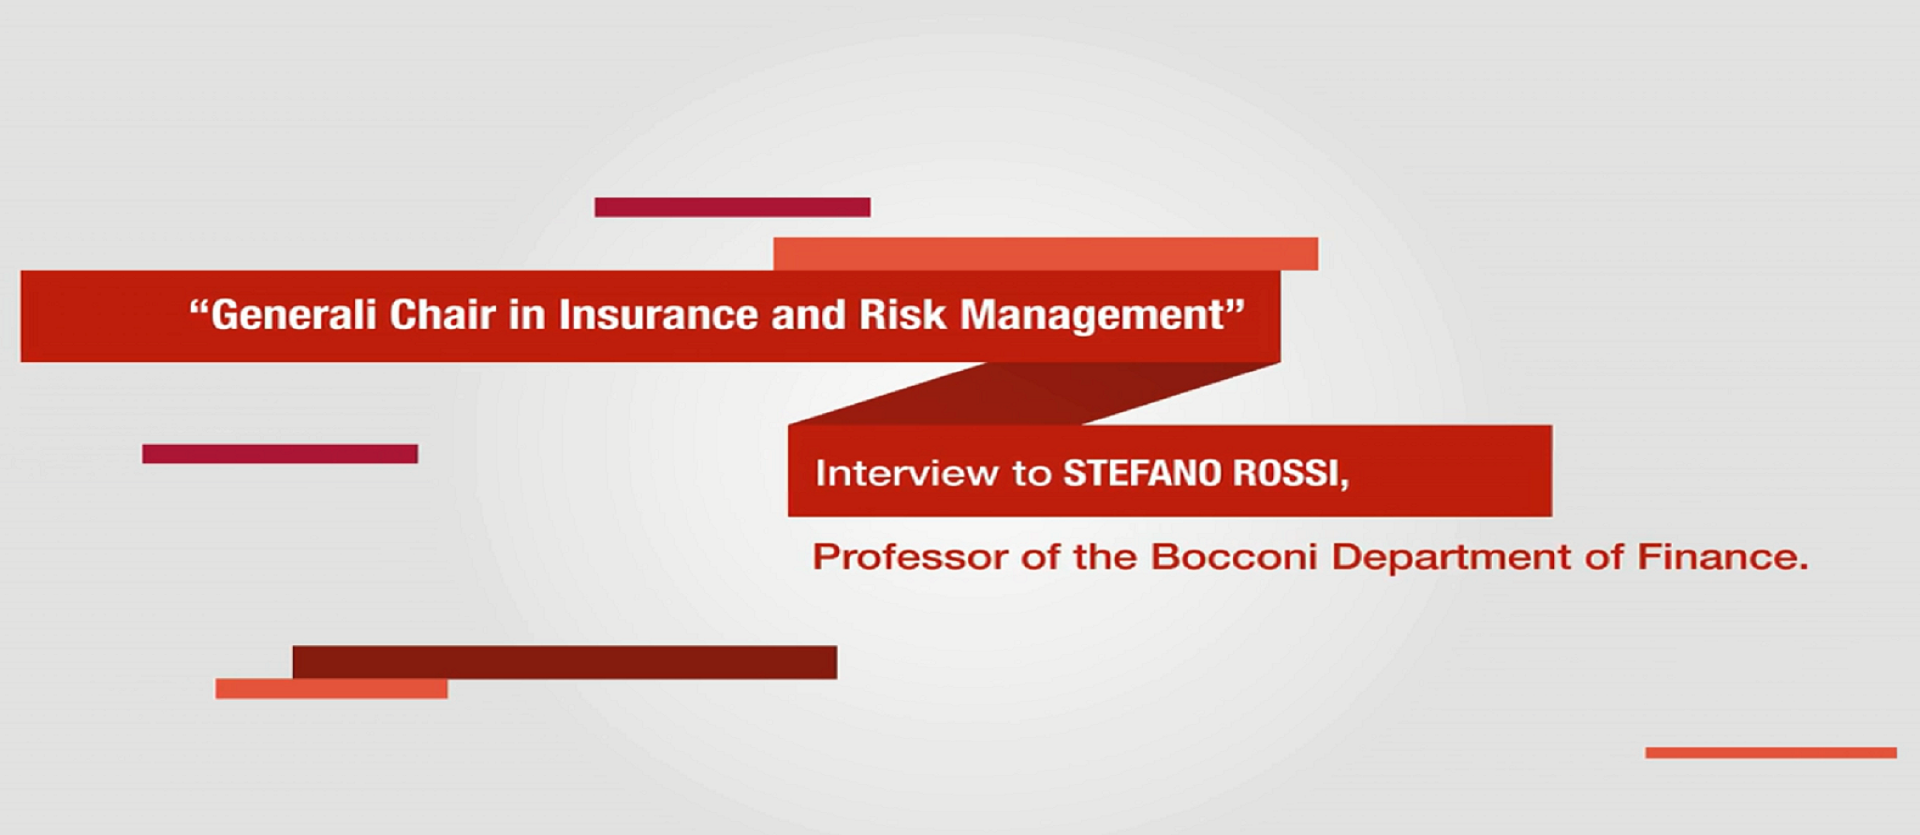 Intervista a Stefano Rossi, Professore del Dipartimento di Finanza dell'Università Bocconi